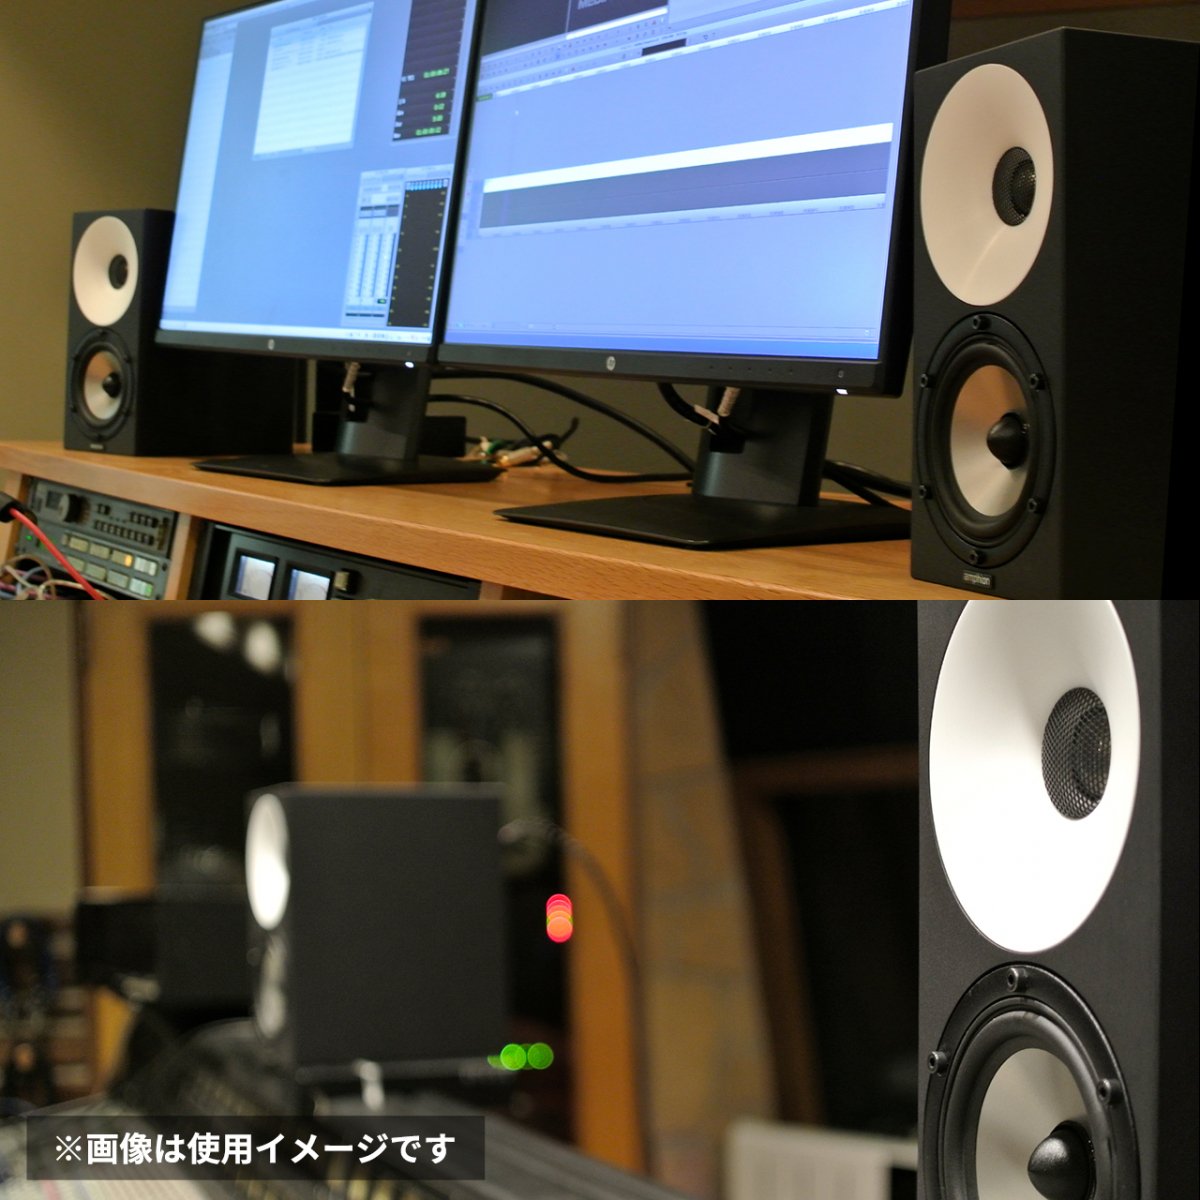 One12 Nearfield studio monitor 【ペア】